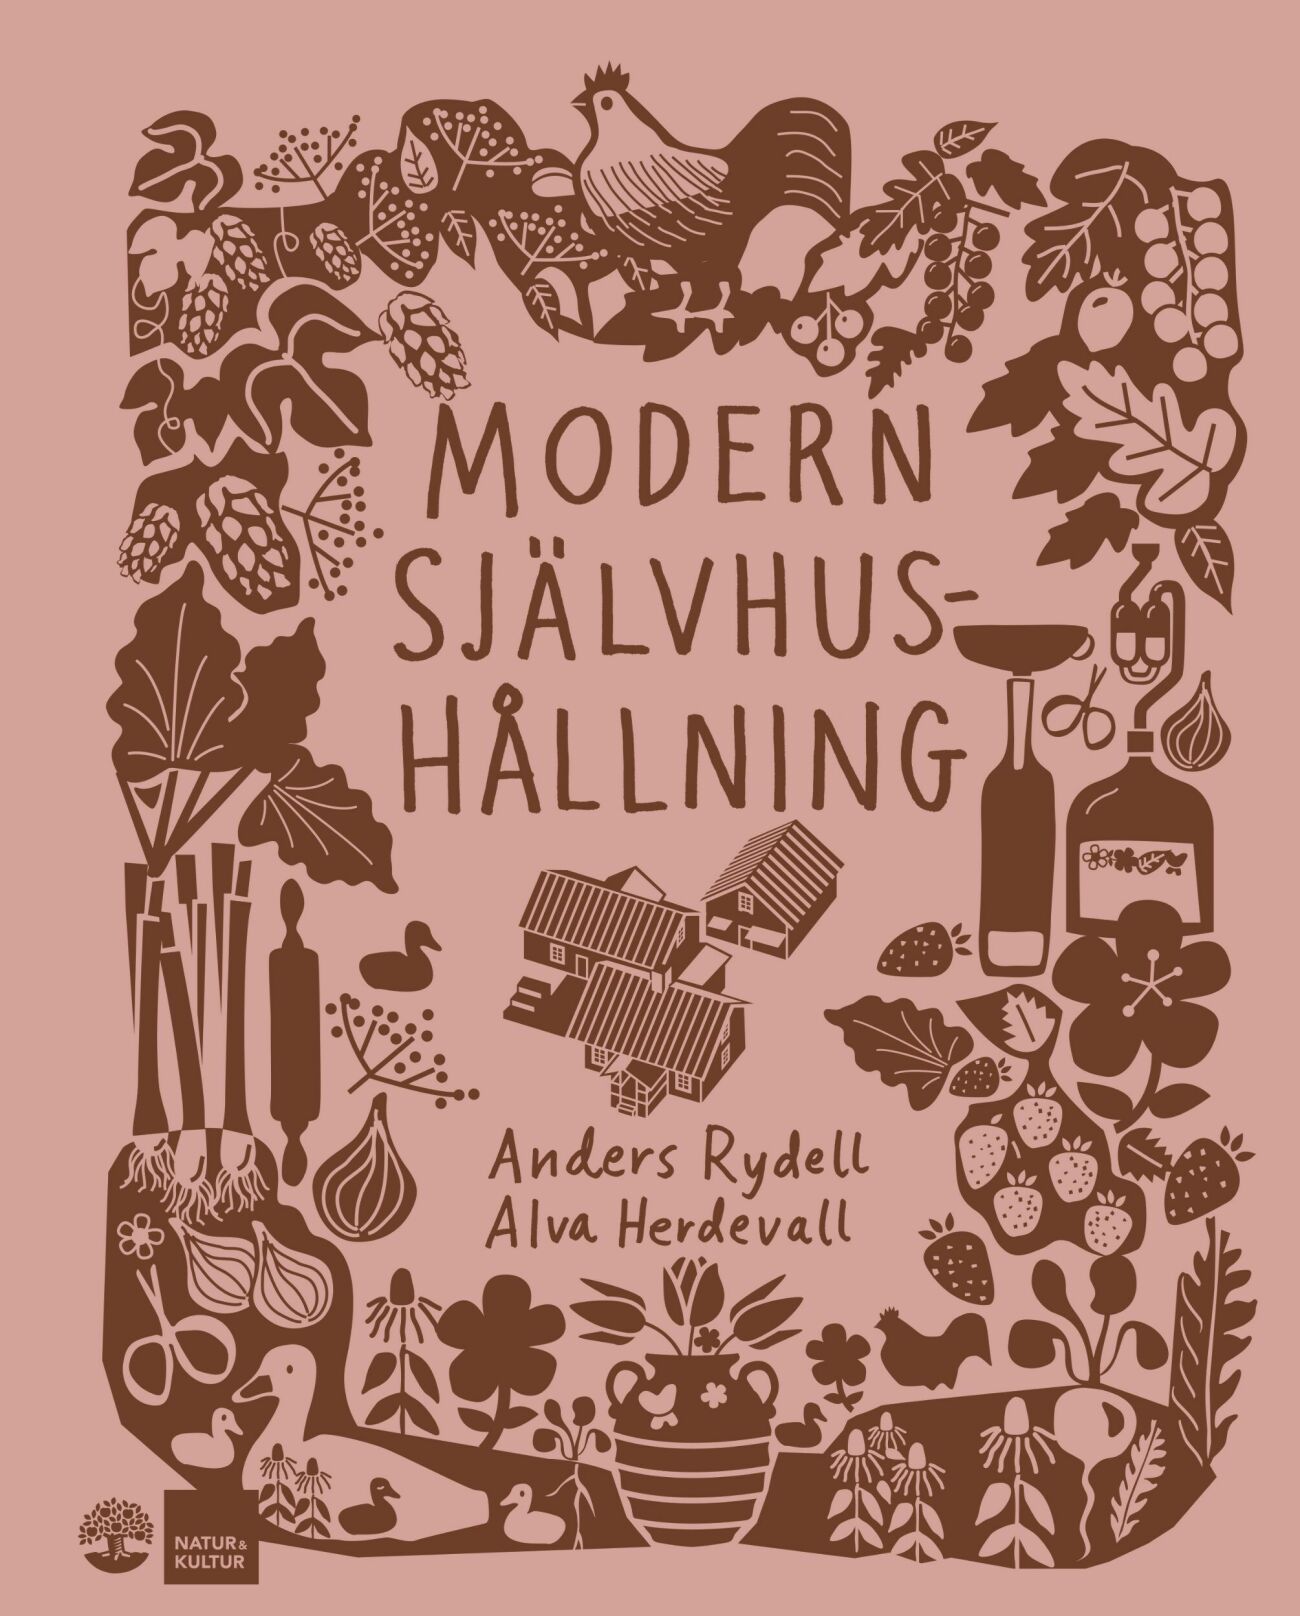 Modern självhushållning av Anders Rydell och Alva Herdevall.